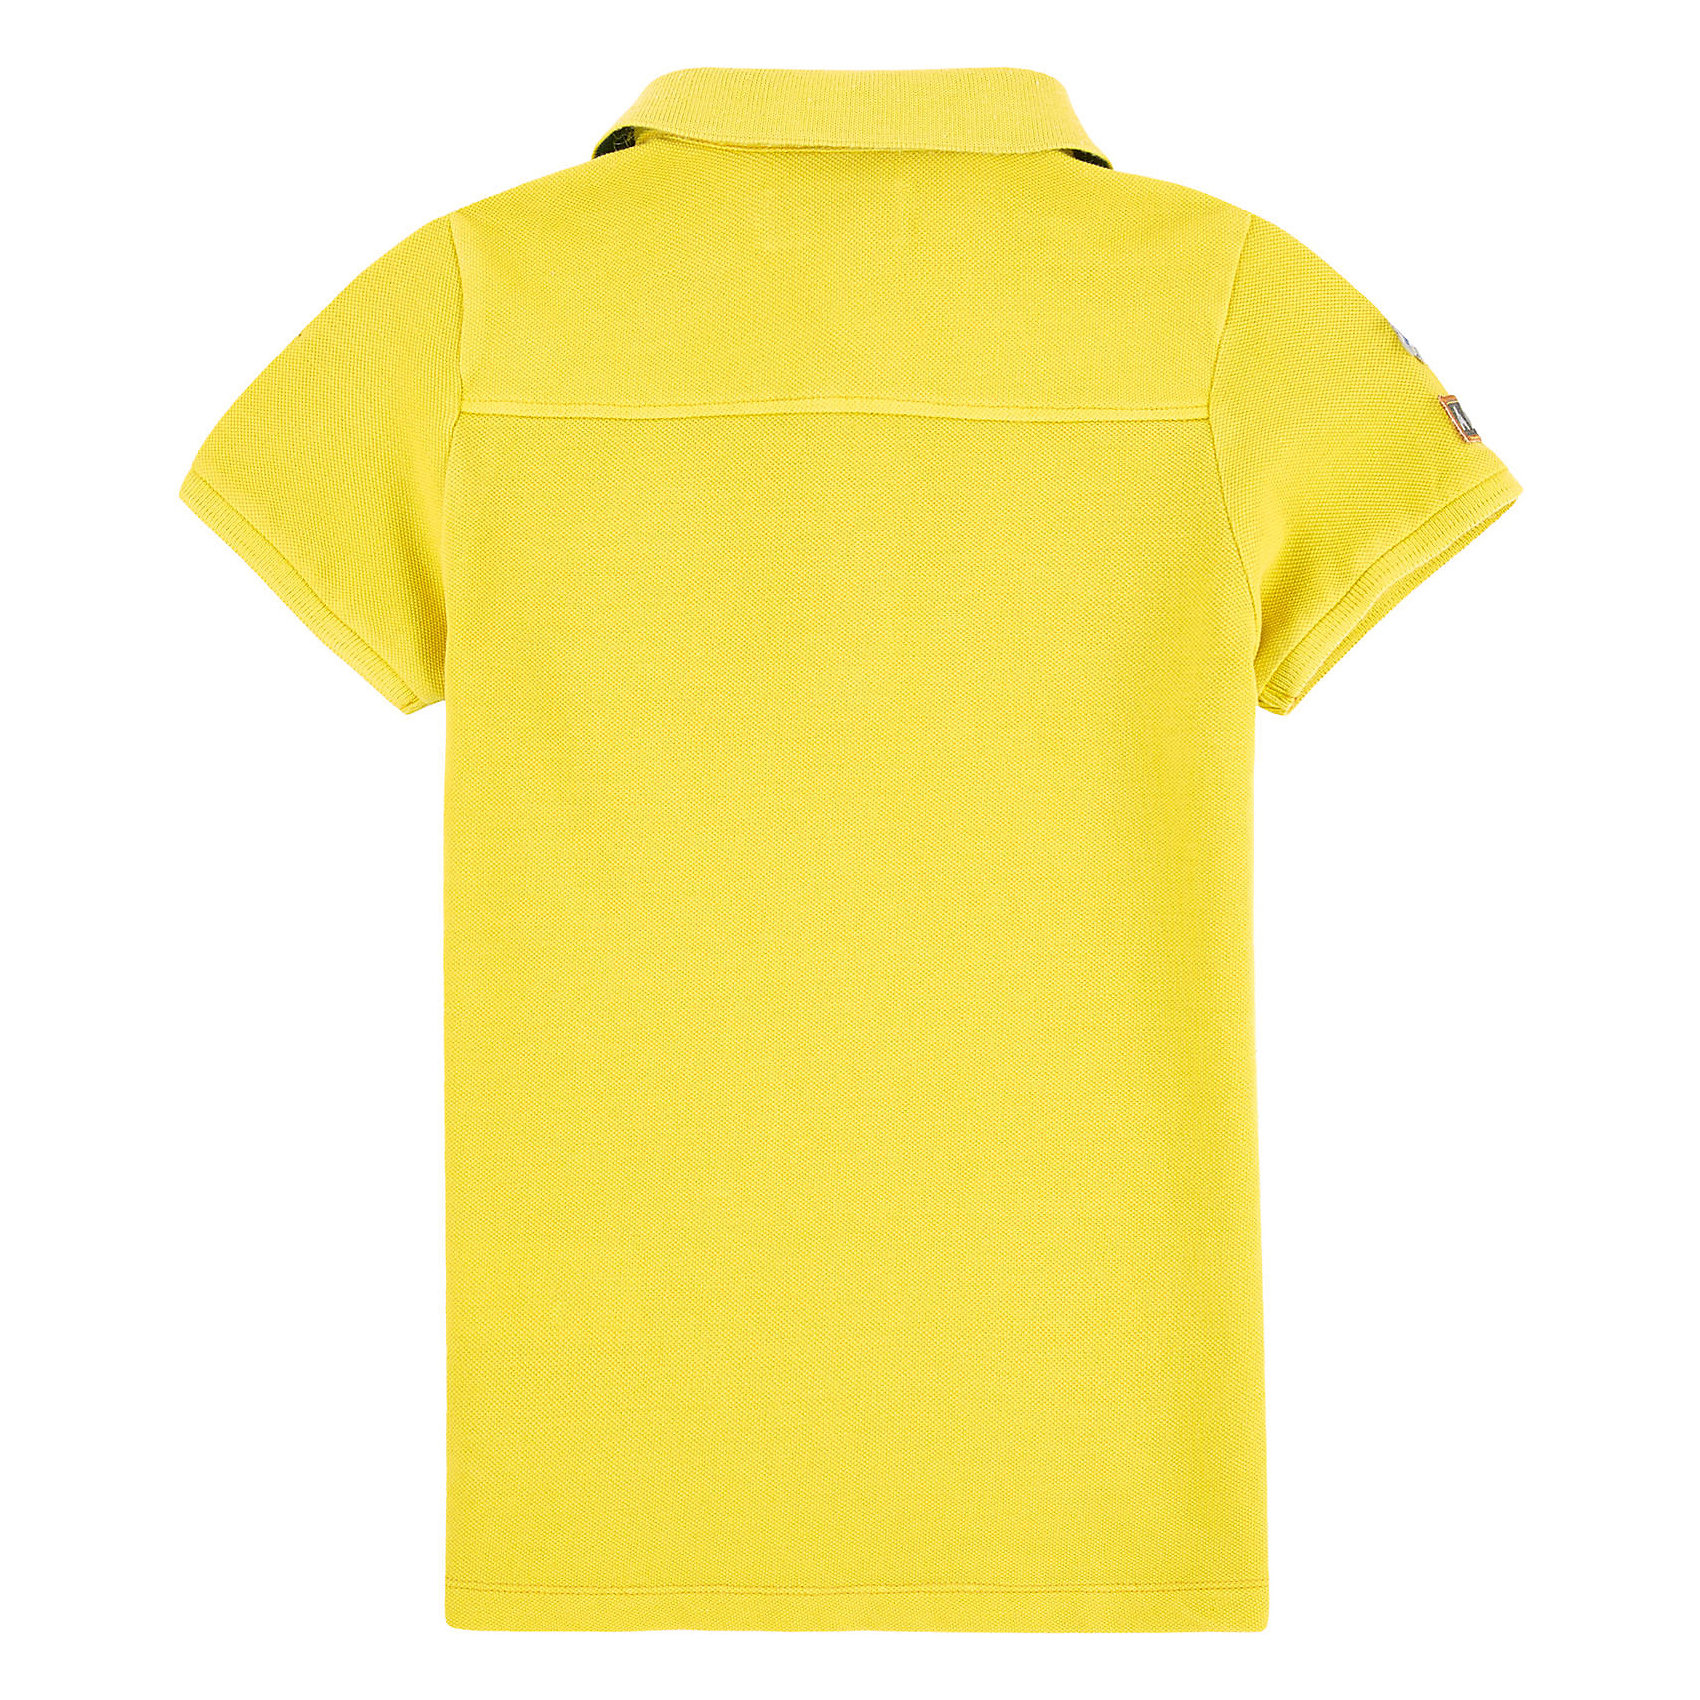 Купить желтые мальчику. Футболка для мальчика желтая. Желтая футболка поло на мальчика. Майка 1929 желтая для мальчиков. Желтые футболки поло ЗТП.